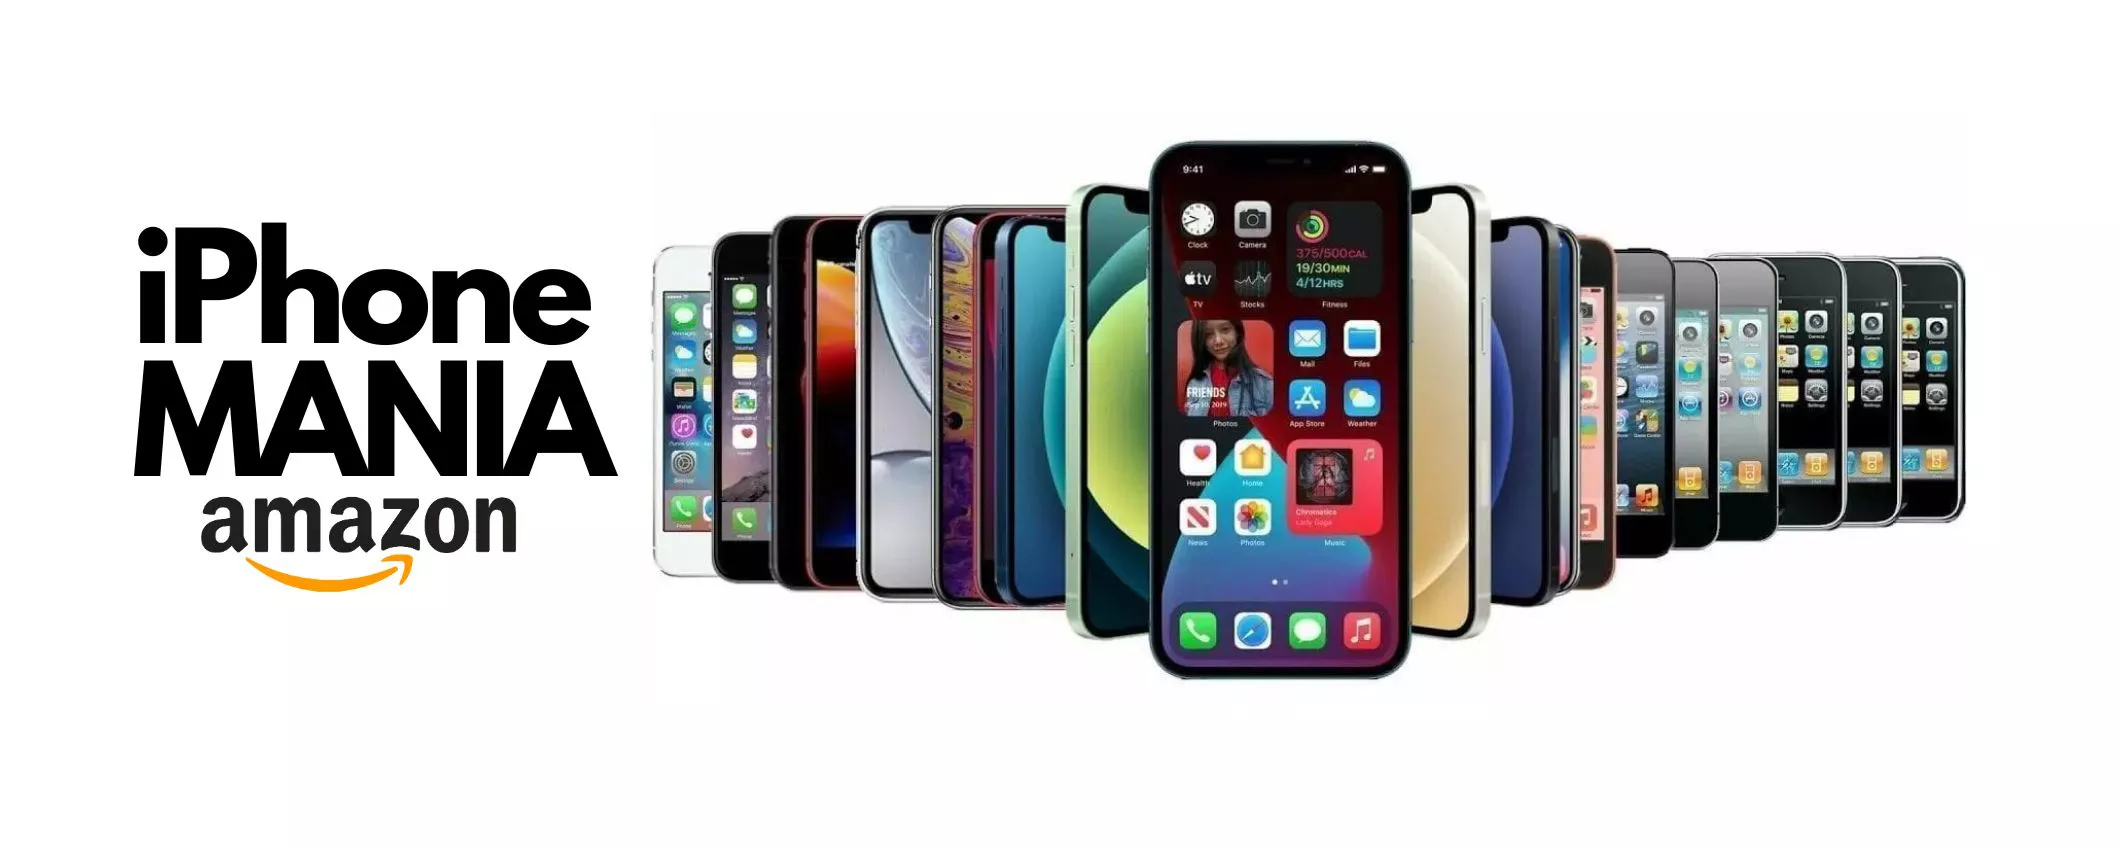 iPhone MANIA su Amazon: tutti i melafonini Apple dall'11 al 14 a prezzi STRACCIATI